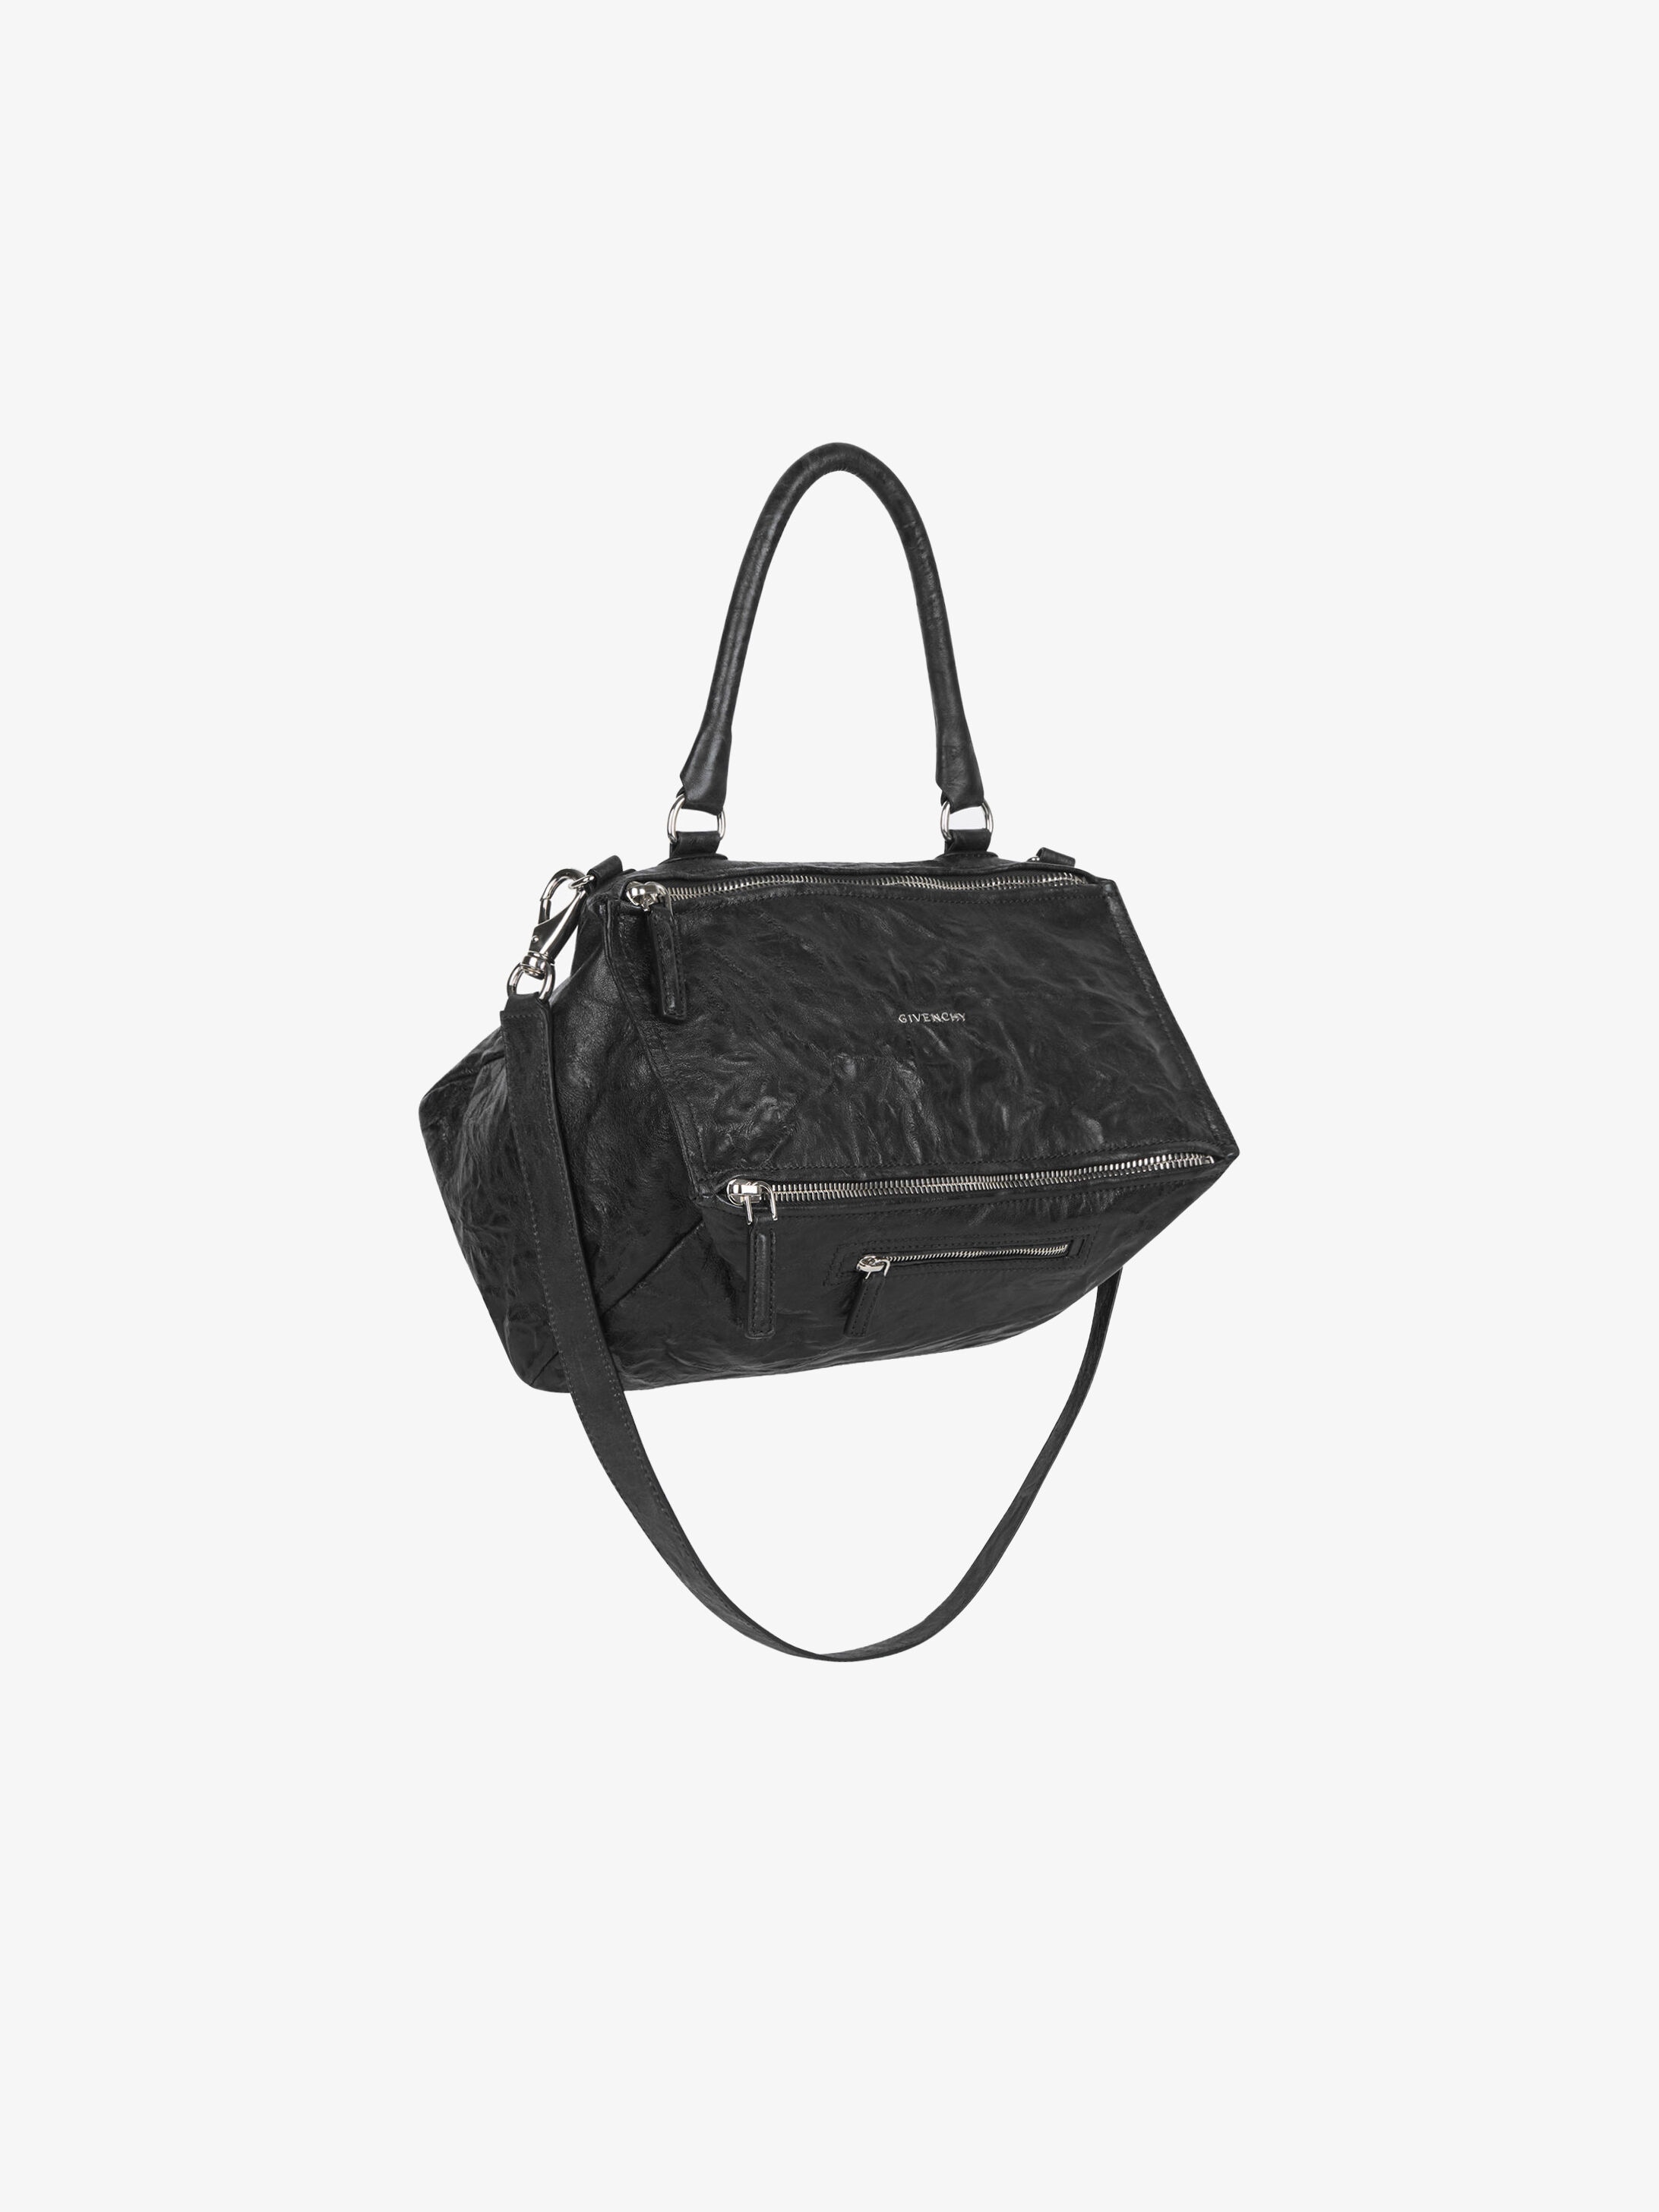 Givenchy Medium Pandora bag in aged 